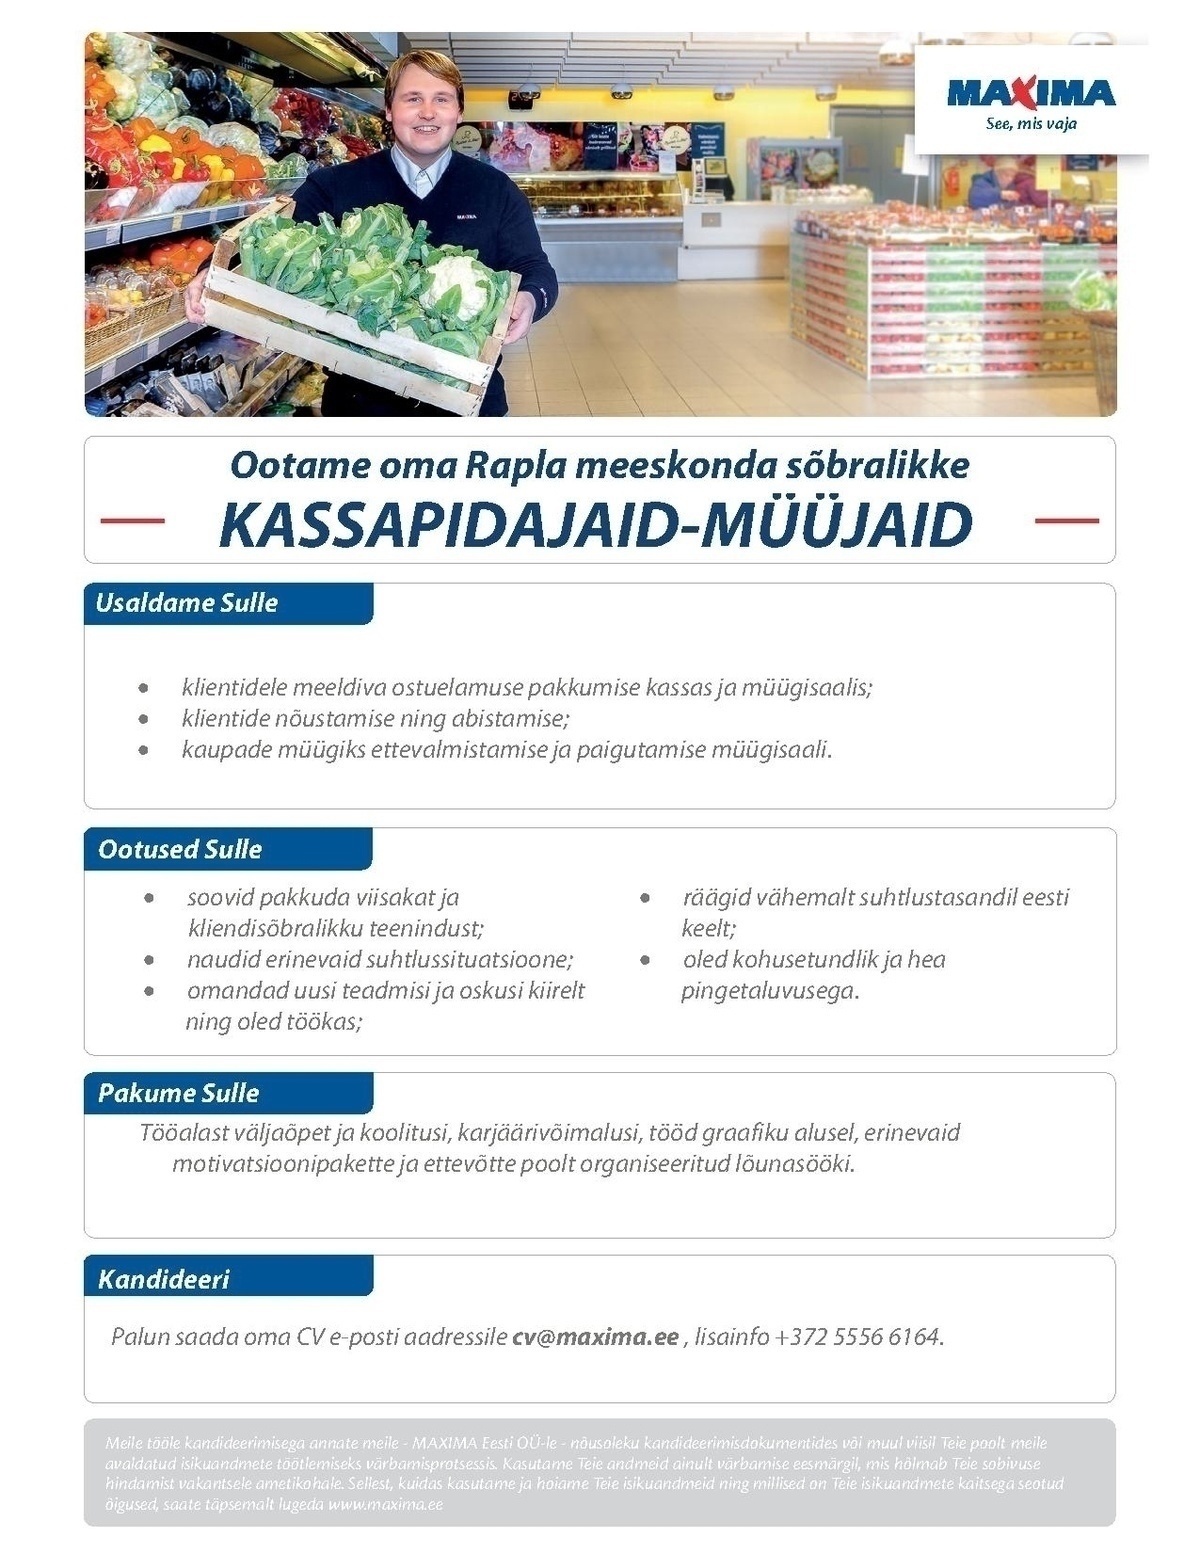 Maxima Eesti OÜ Kassapidaja-müüja Pärnu Maximas